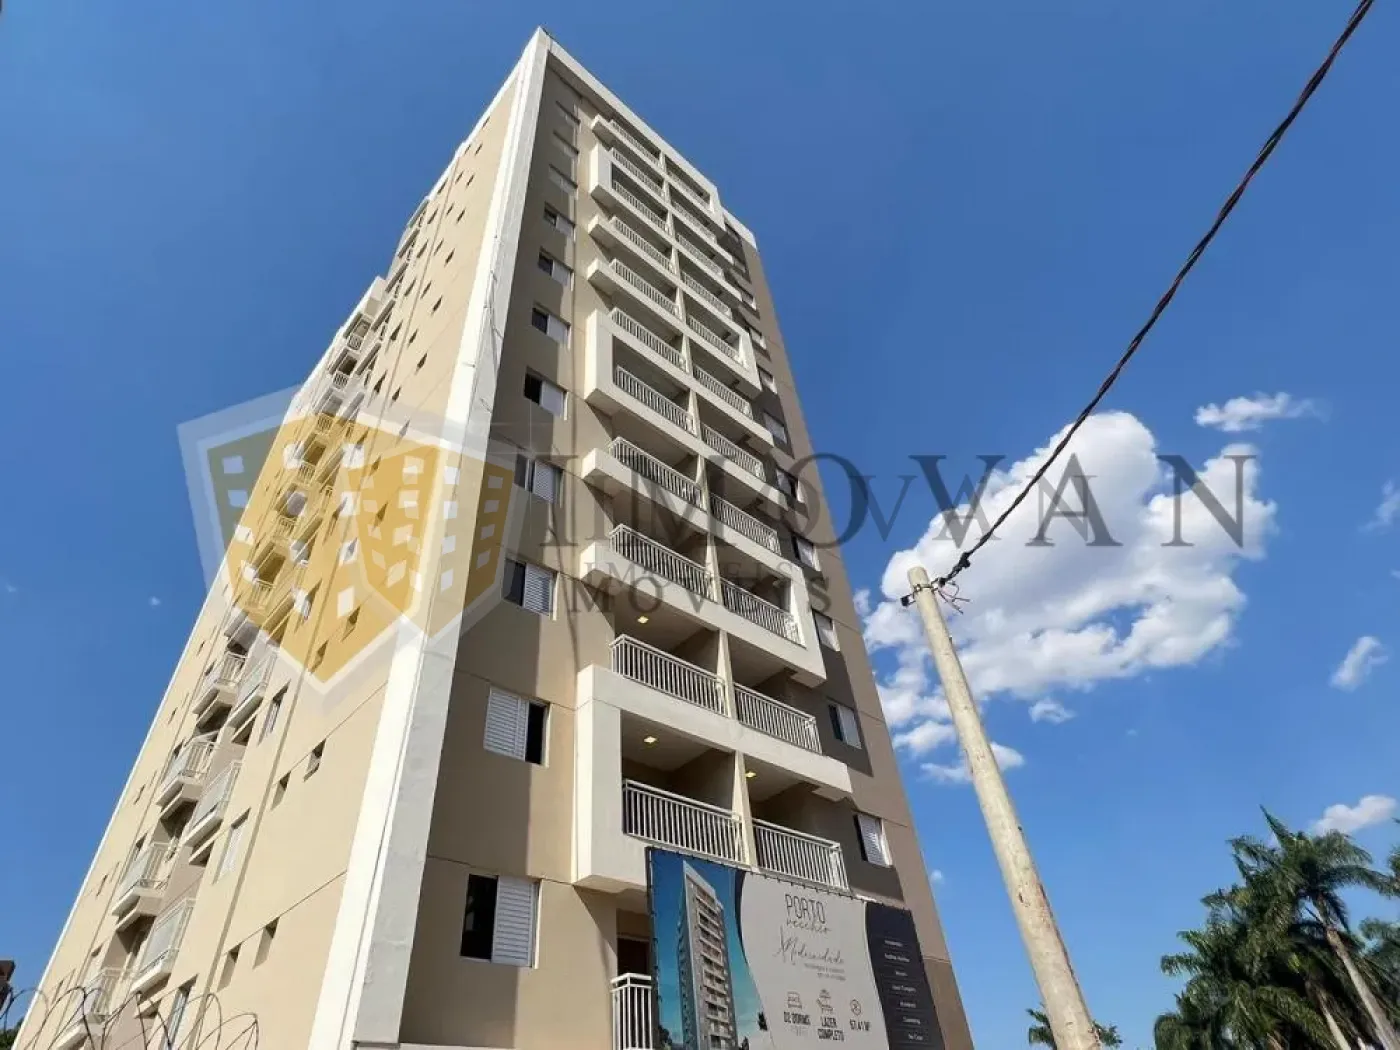 Comprar Apartamento / Padrão em Ribeirão Preto R$ 445.000,00 - Foto 4